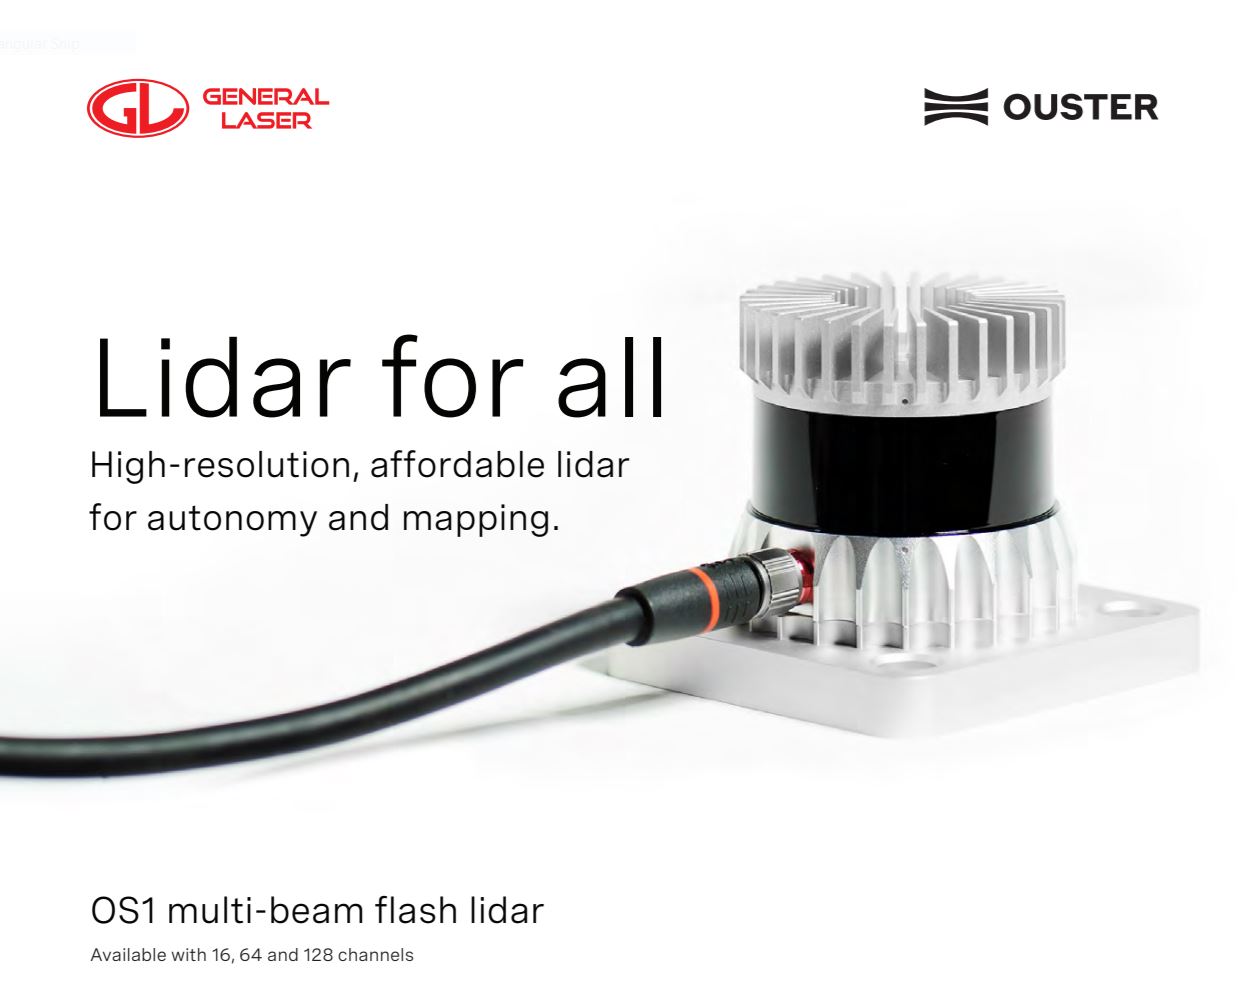 OUSTER Multi-Beam Flash LiDAR